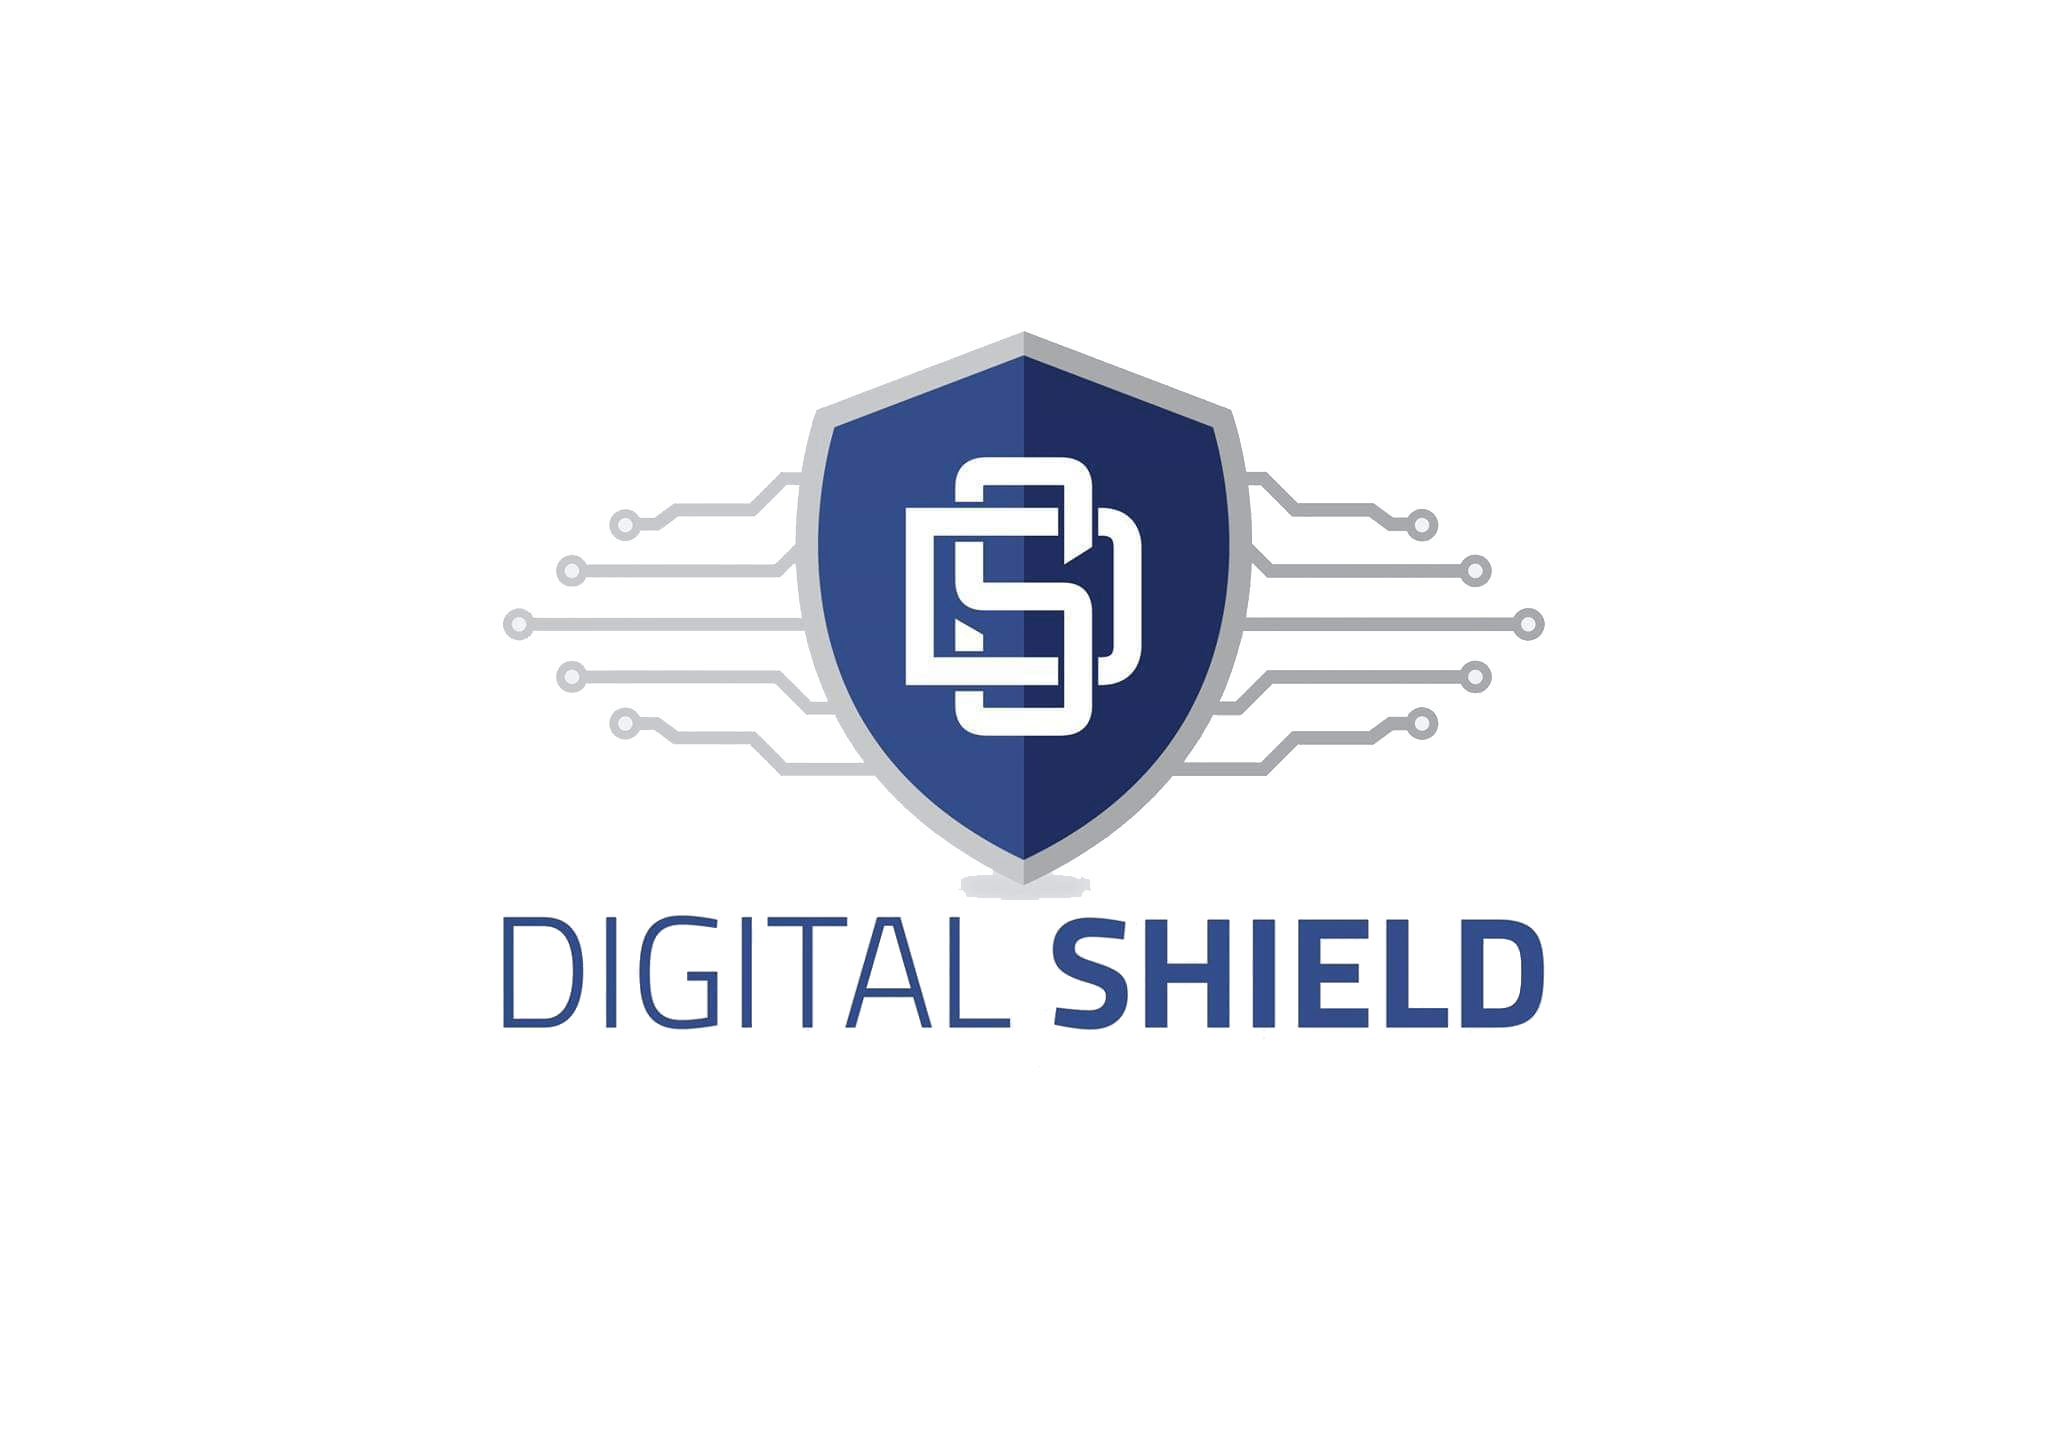 Digital Sheild logo